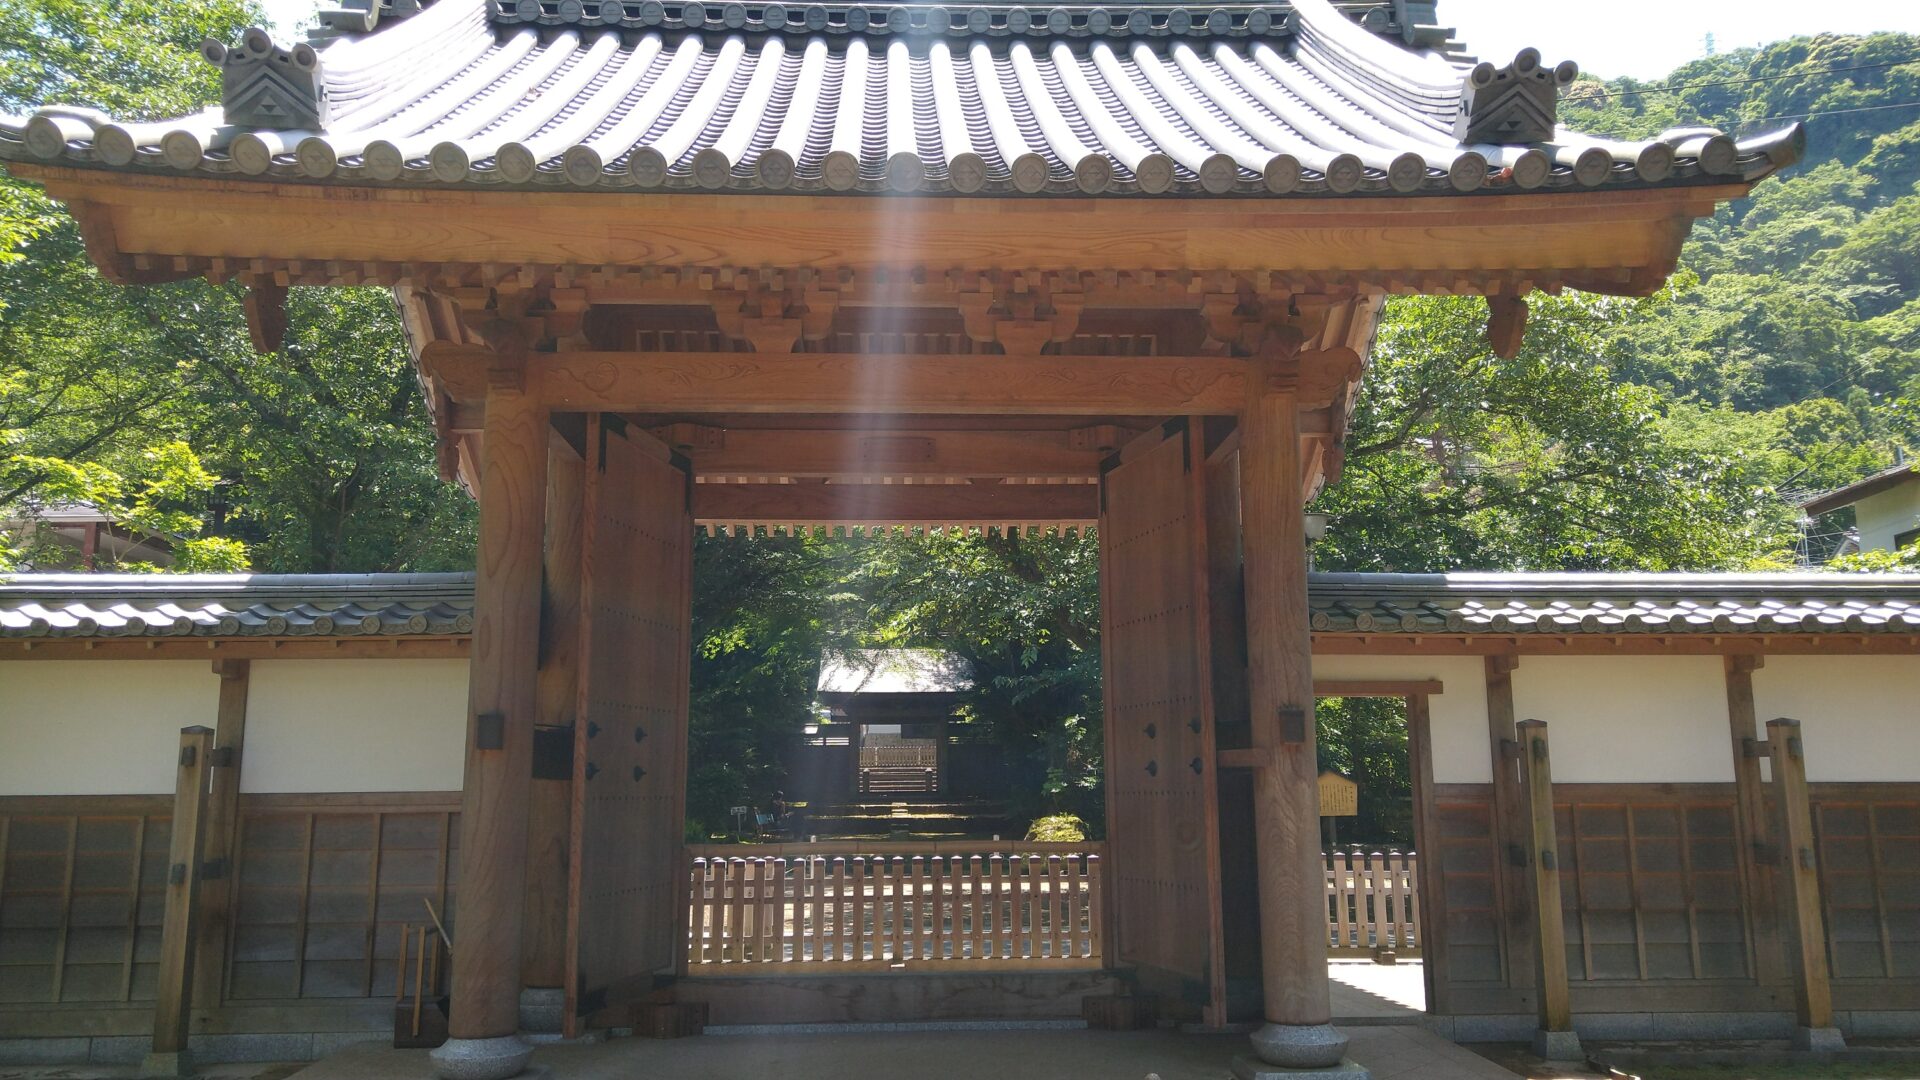 自然災害伝承碑の旅、第１号です。箱根にある早雲寺の境内にある震災遭難者追悼句碑です。